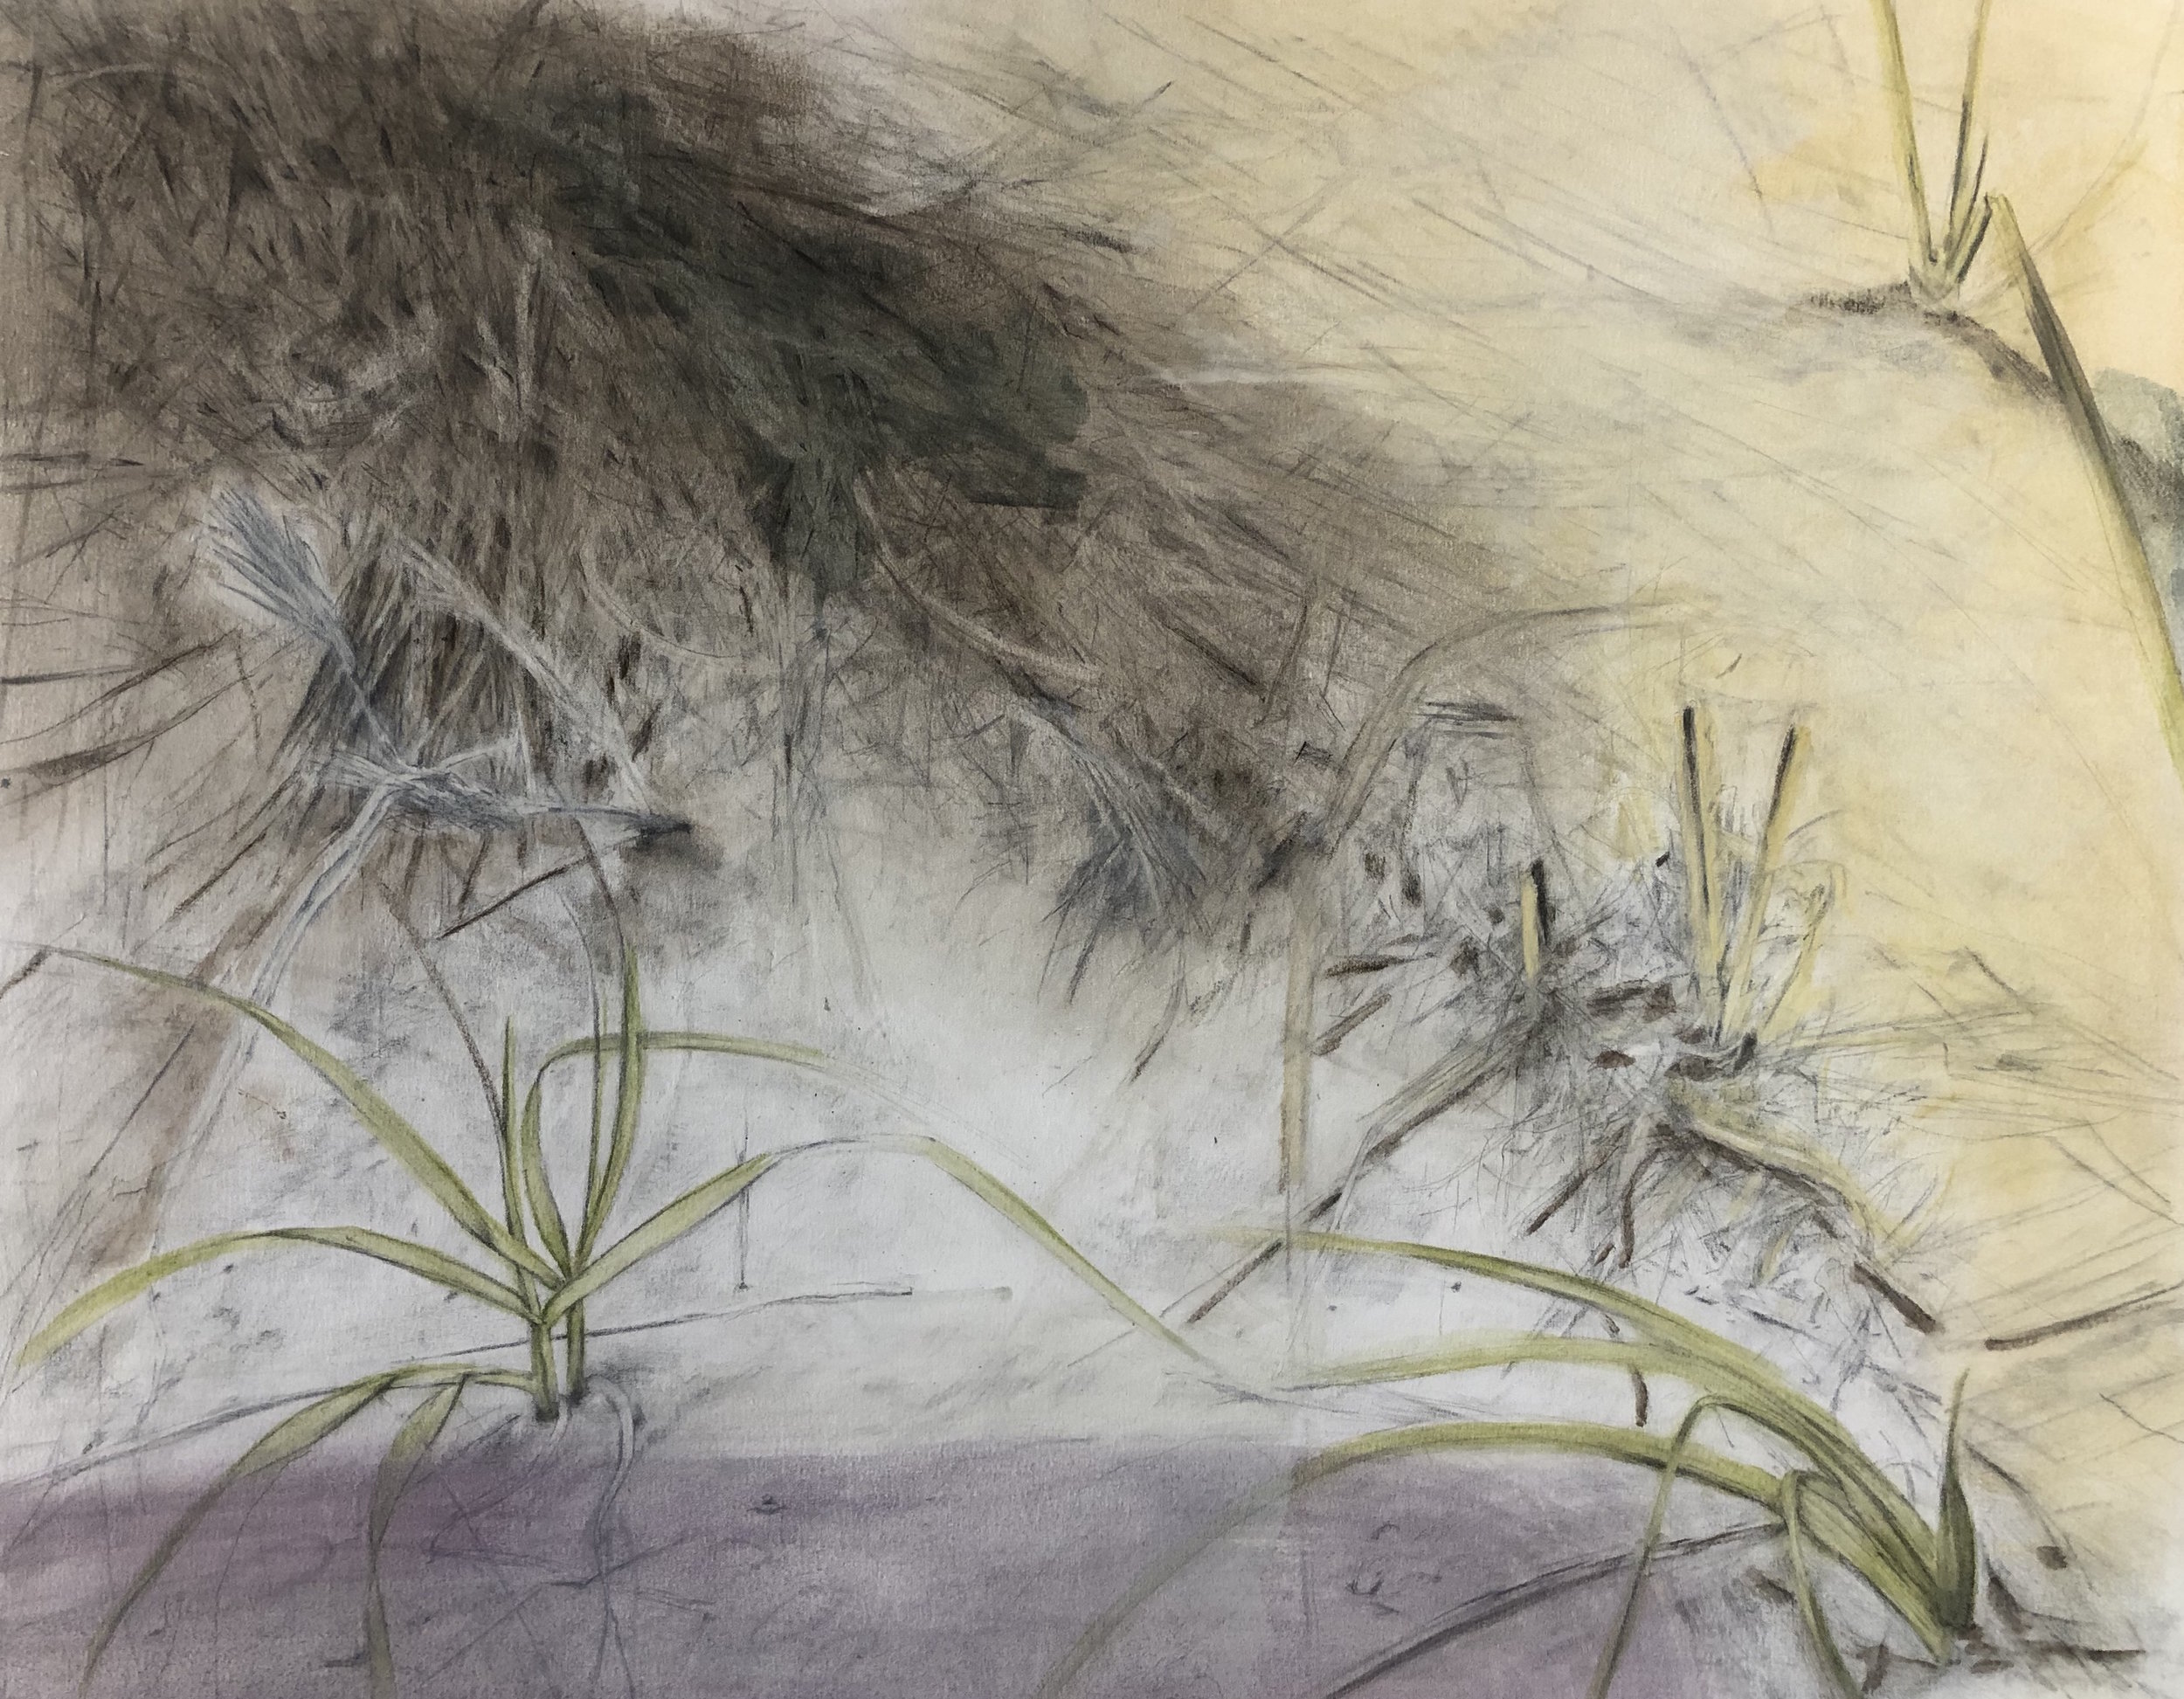 Dunes Rendering, Painting, 2015